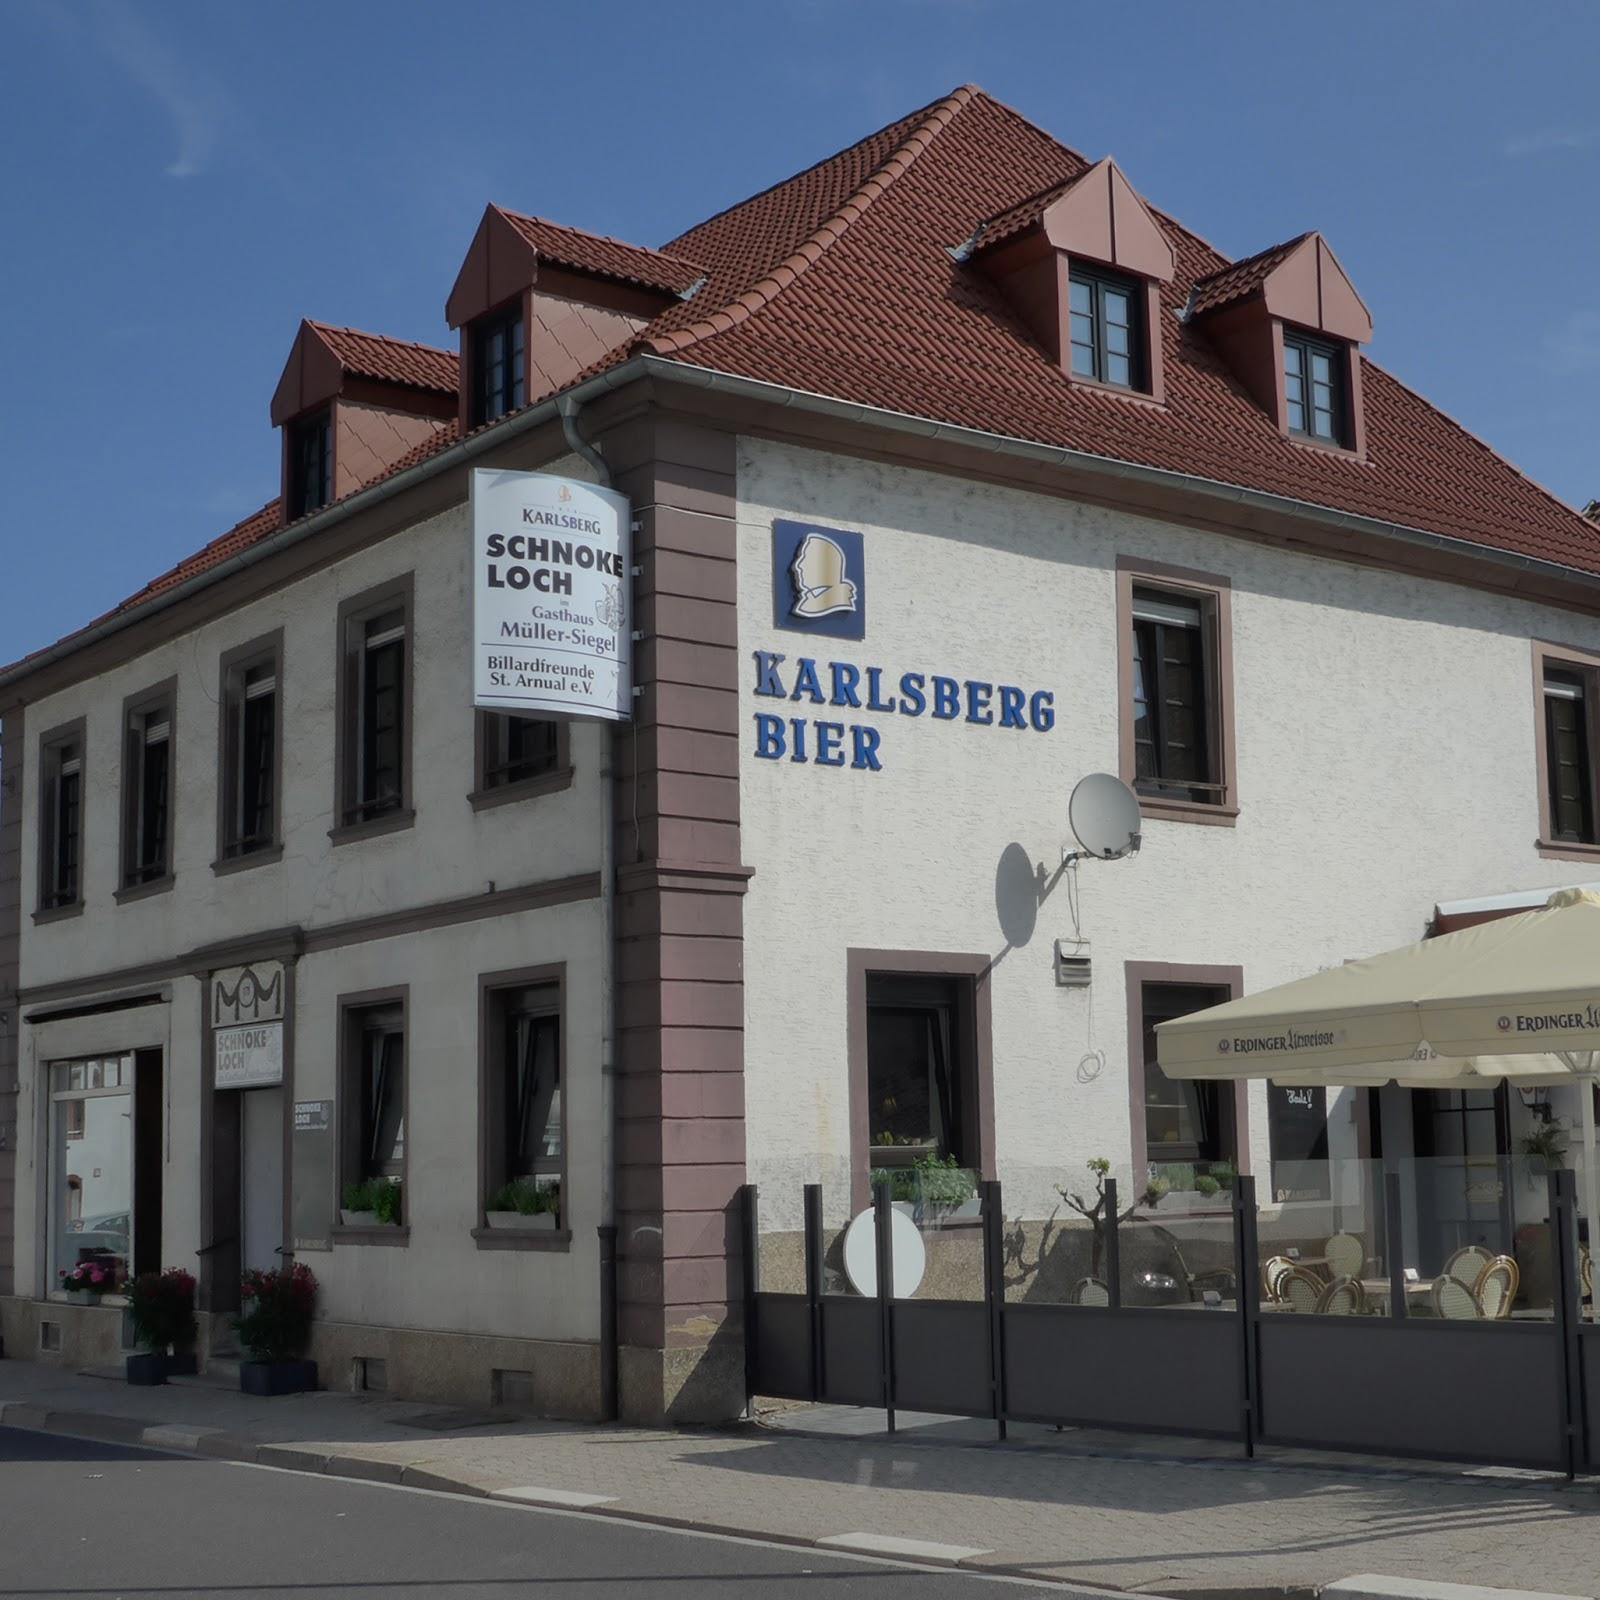 Restaurant "Schnokeloch im Gasthaus Müller-Siegel" in Saarbrücken